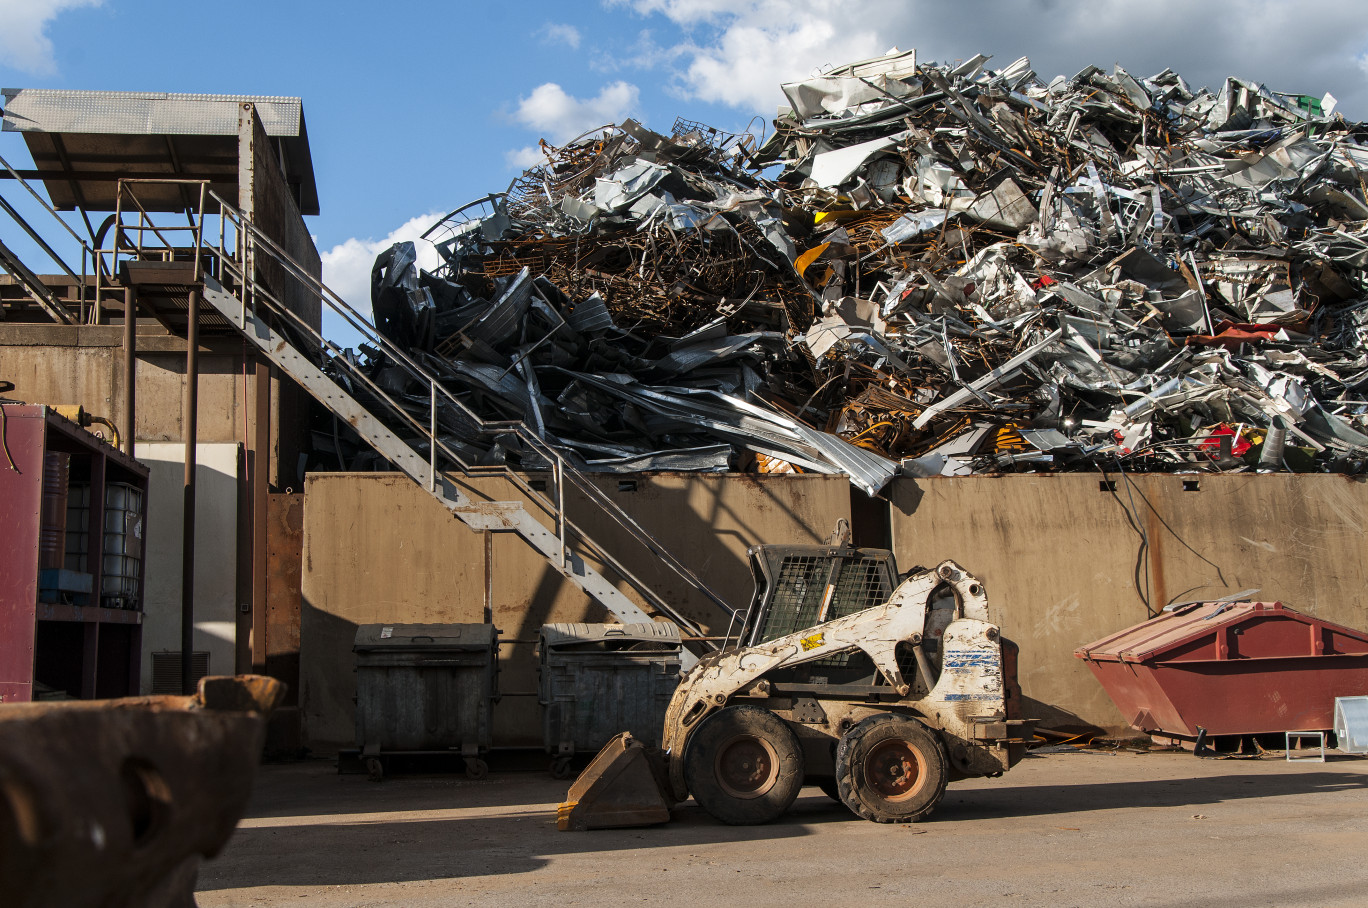 Le BTP, les déchets non dangereux et industriels représentent la majorité de la collecte en Hauts-de-France.©Bertold Werkmann